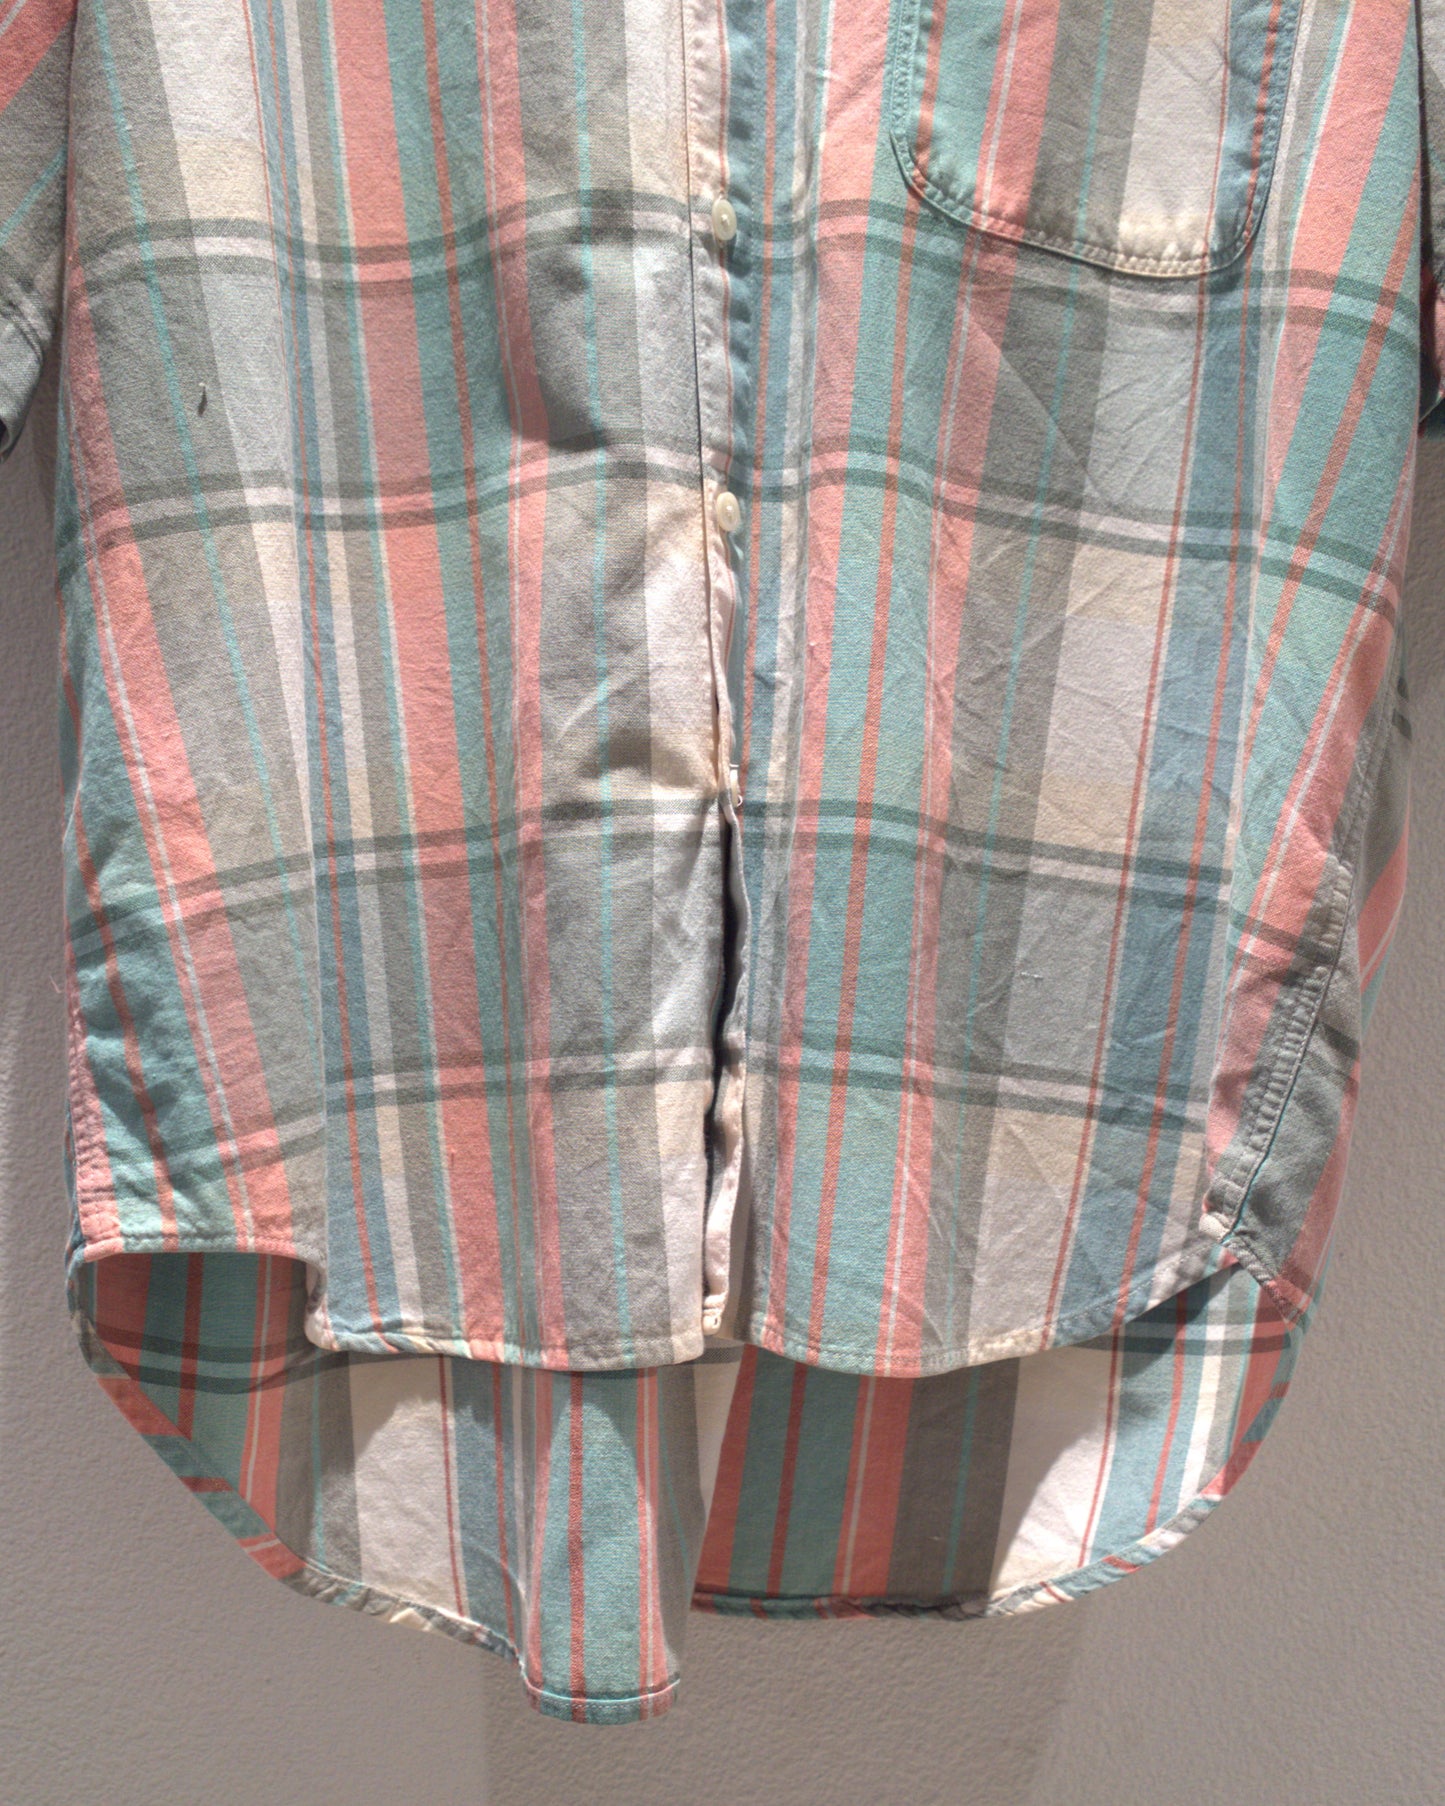 90's Plaid shirt